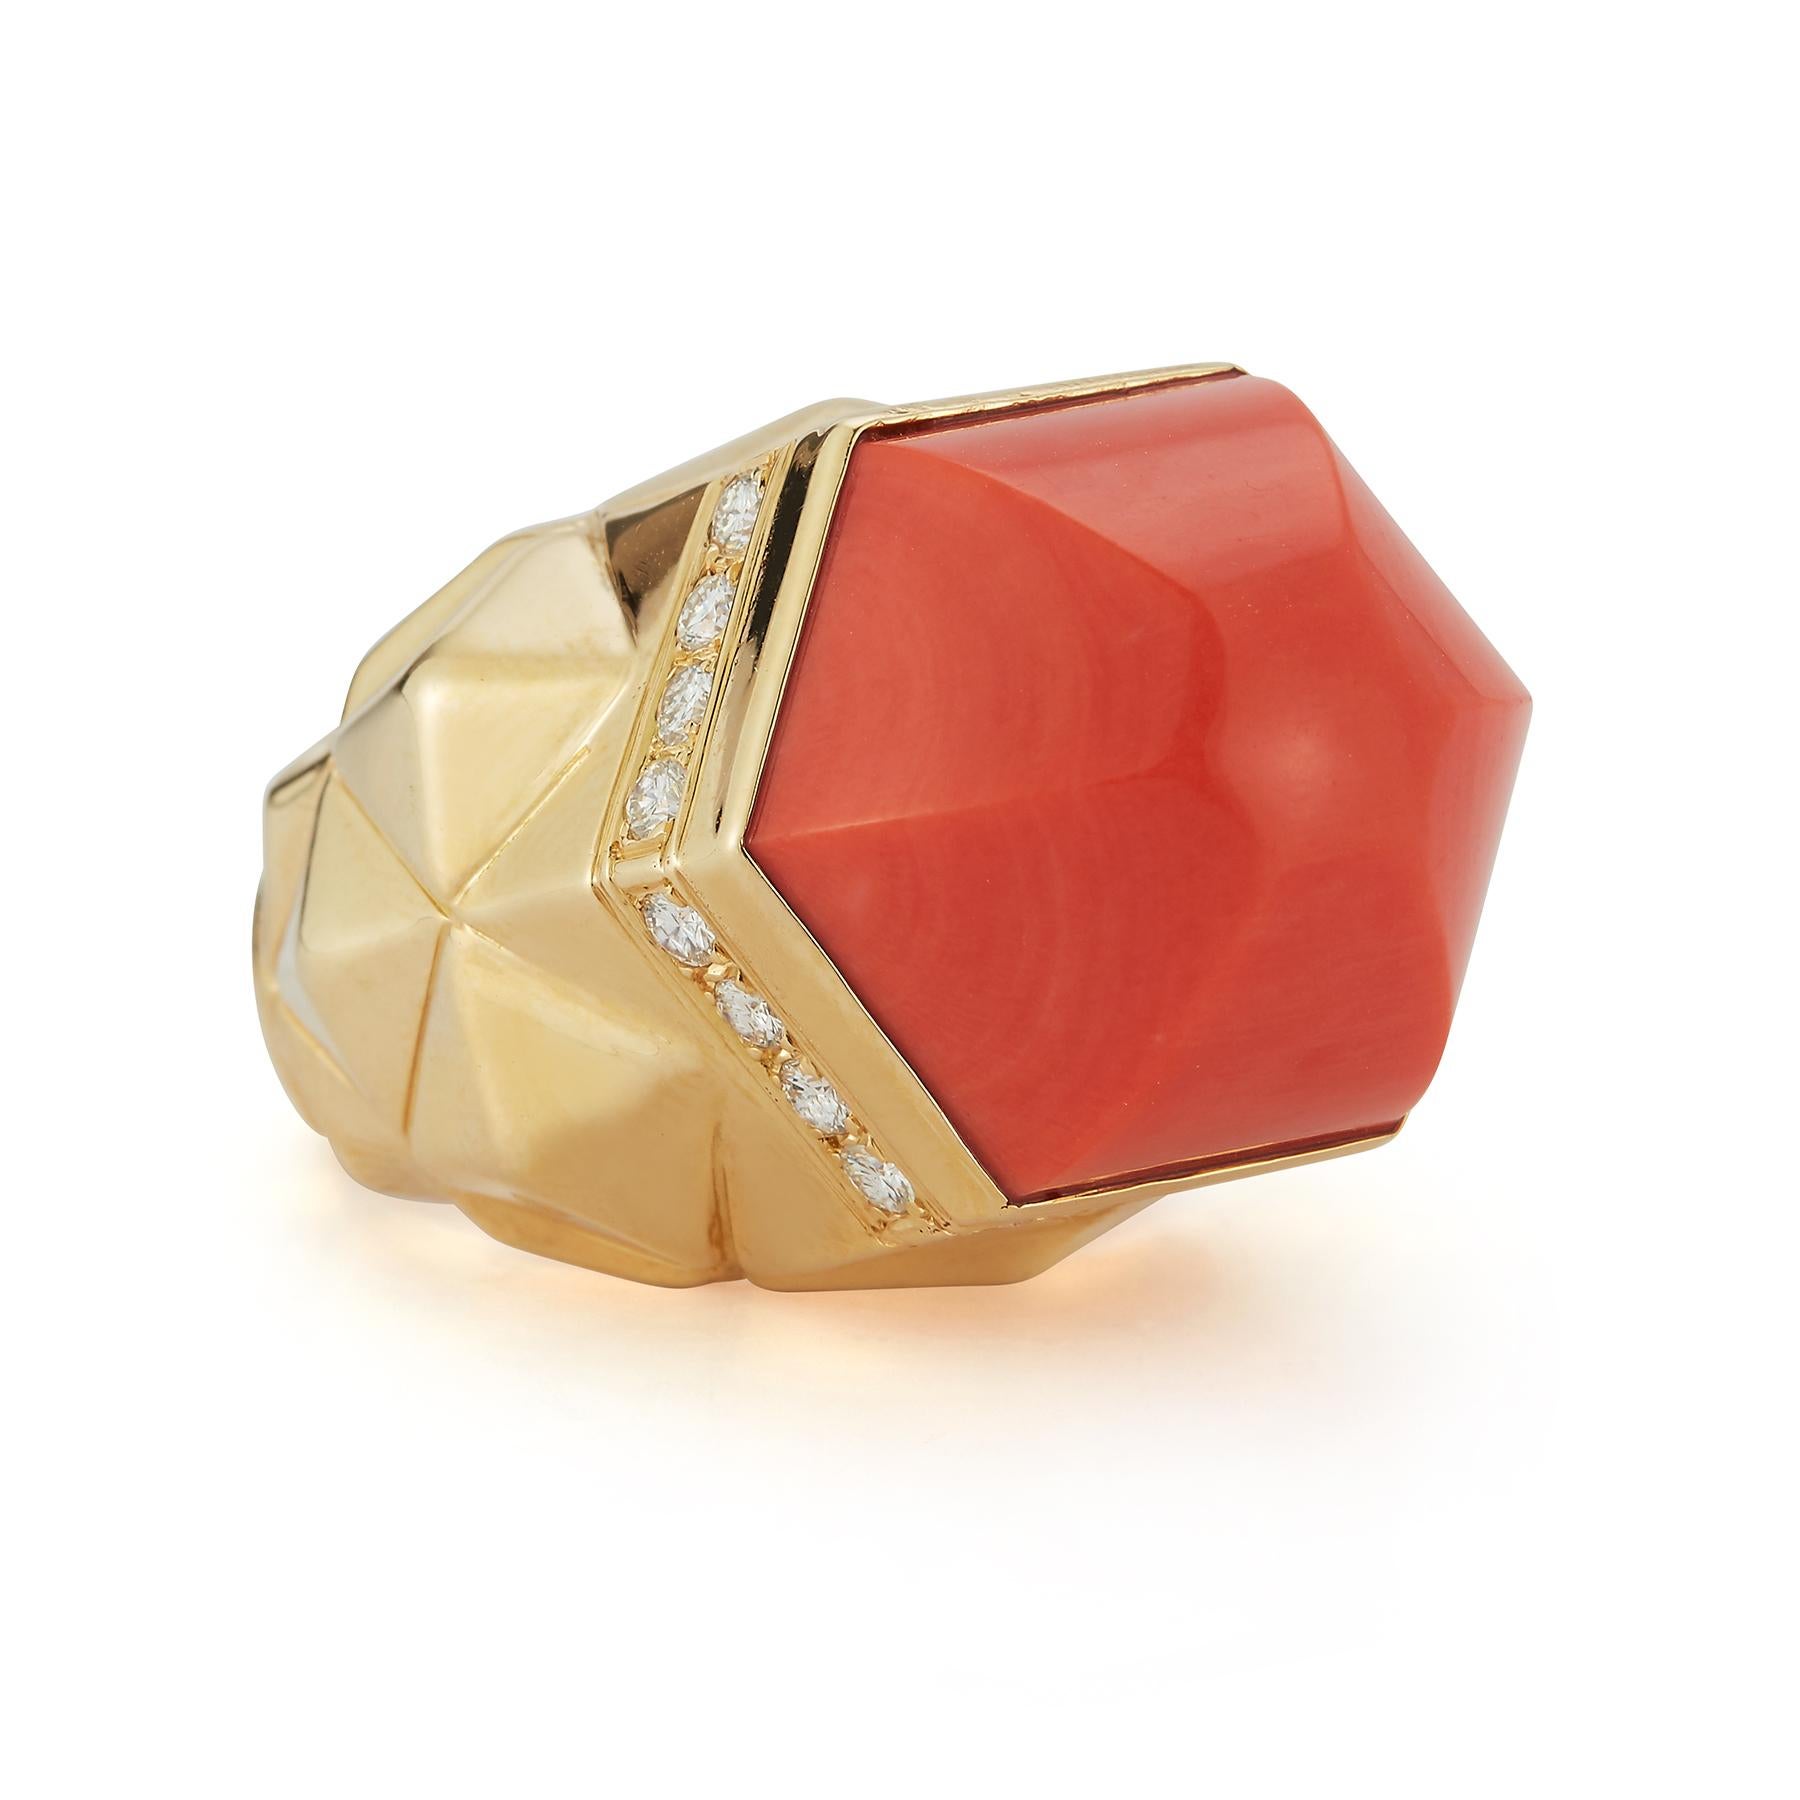 Tiffany and Co - Bague dôme en corail et diamants

1 corail en forme de dôme avec diamants ronds d'environ 0,70 ct sertis en or jaune 18k 

Taille de l'anneau : 8.75

Re sizable free of charge 
